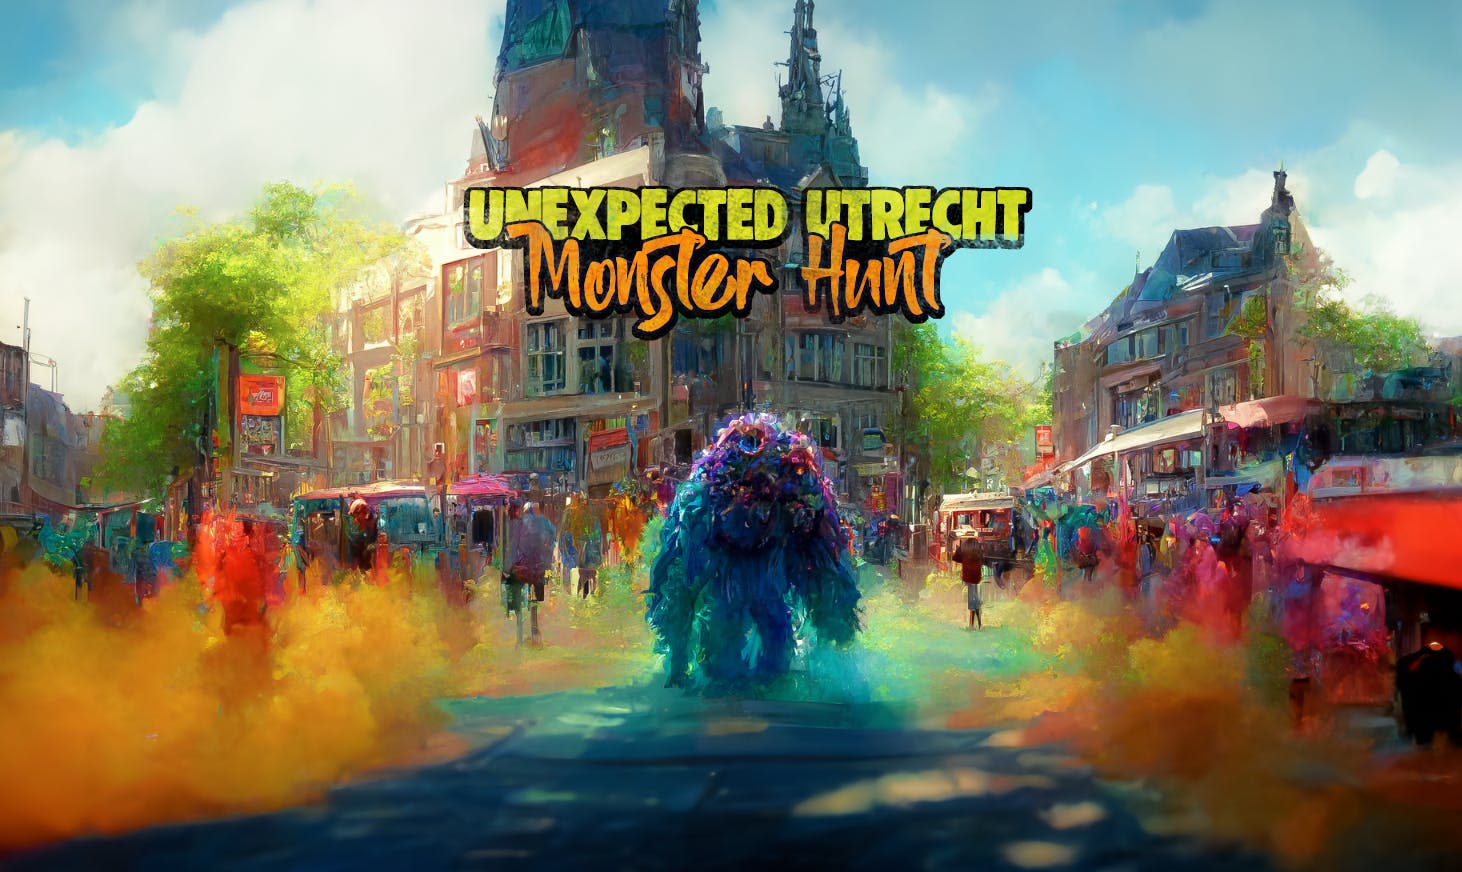 Centro città di Utrecht: gioco e tour di esplorazione del mistero dei mostri